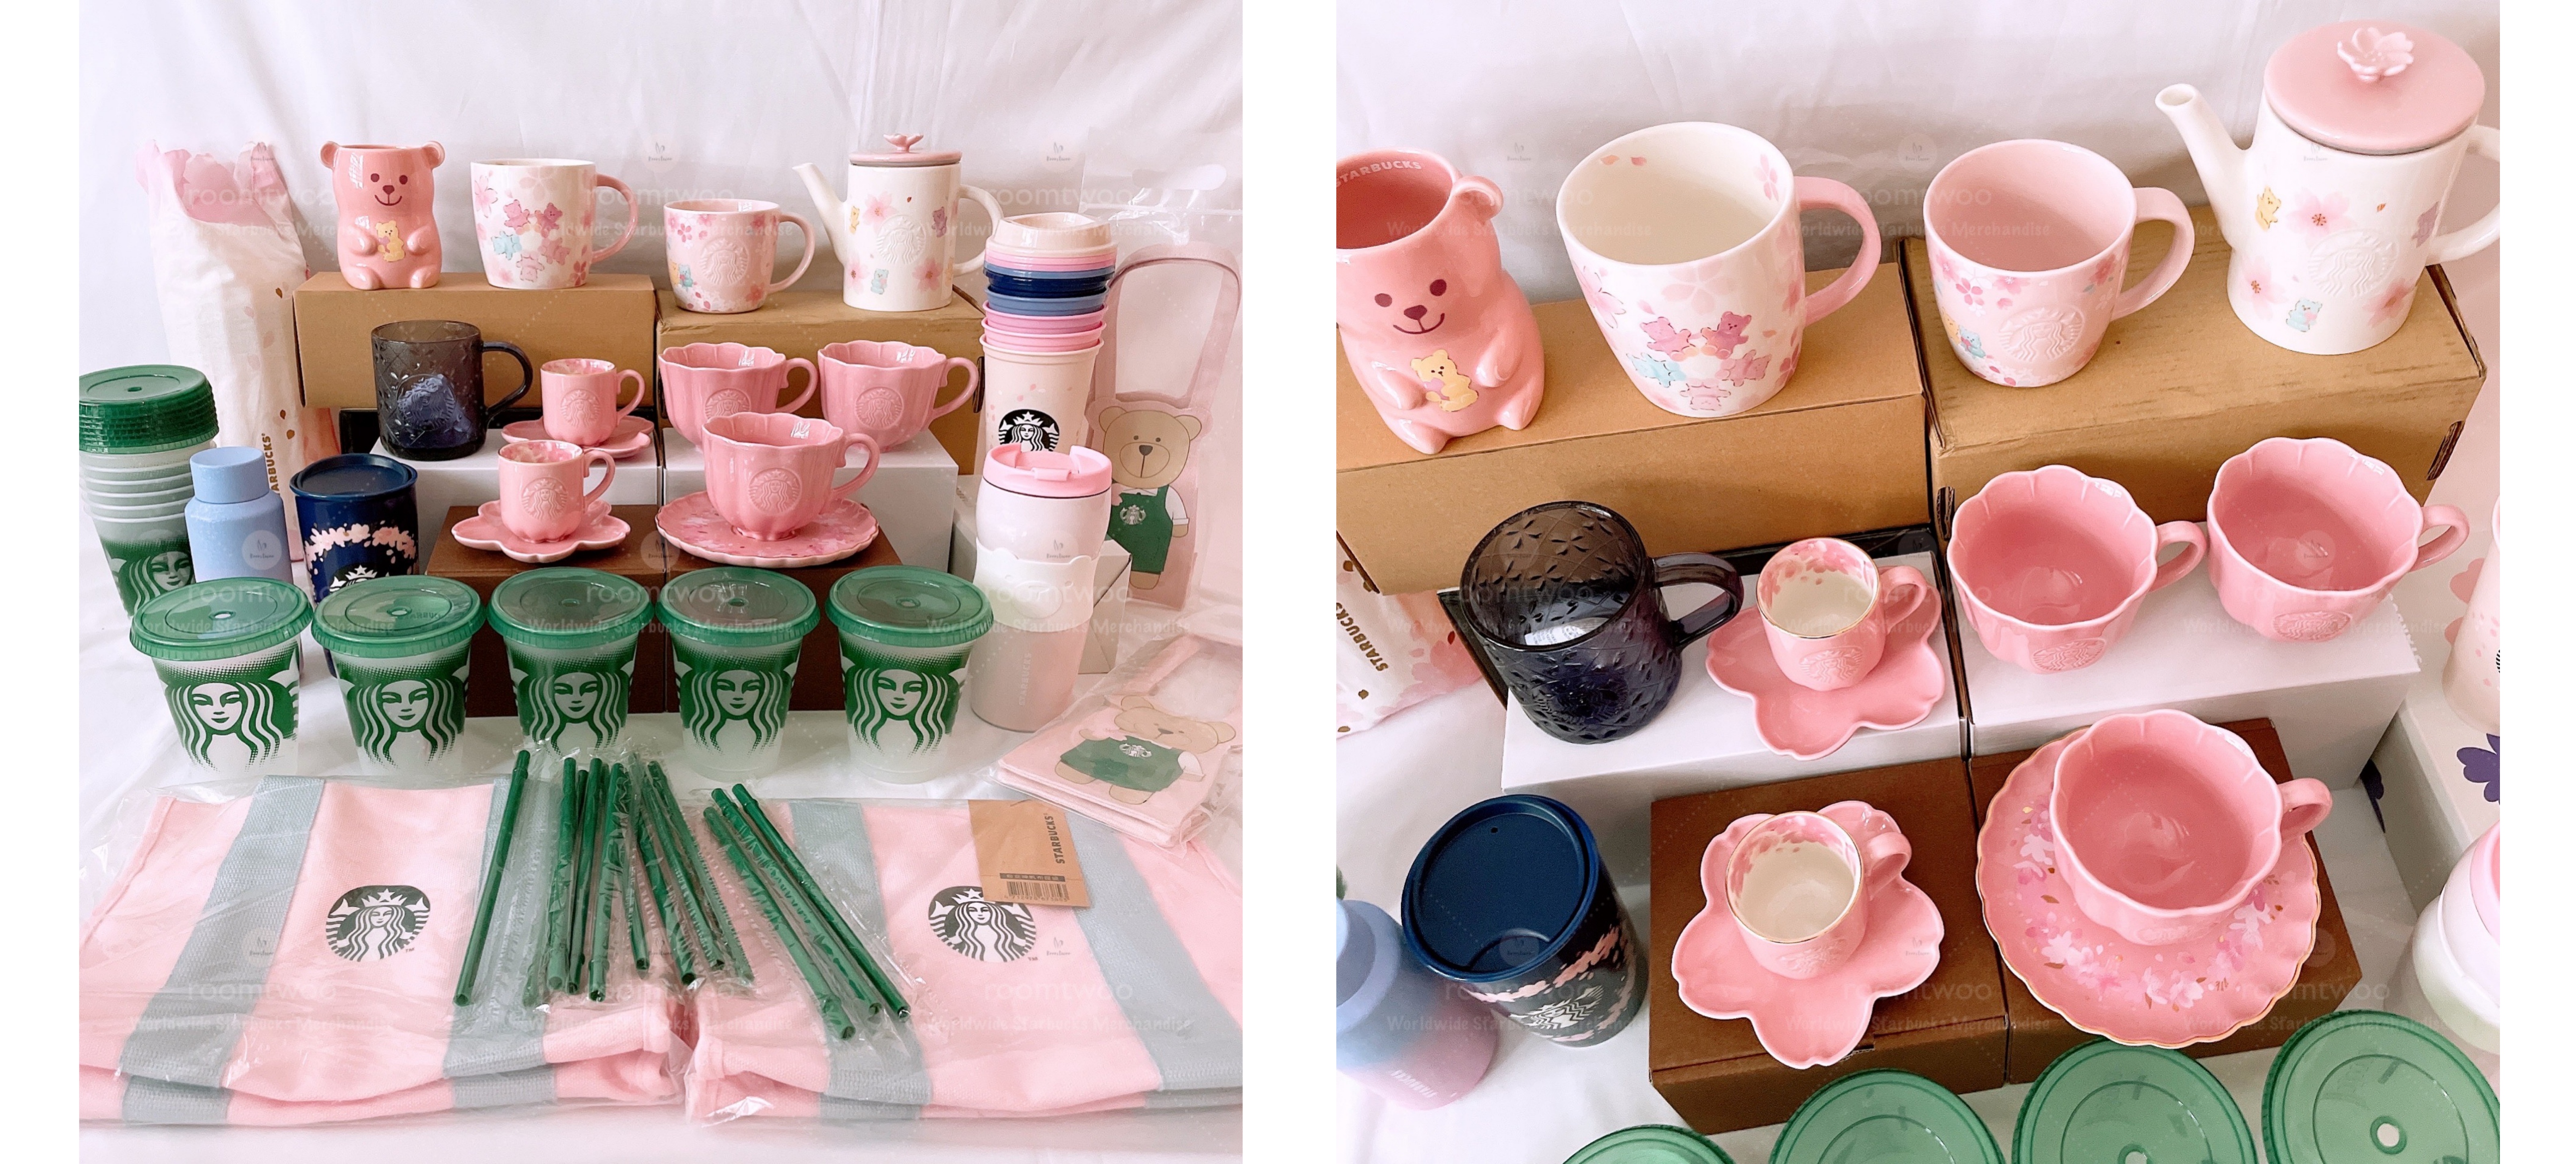 Starbucks Taiwan 2021 Cherry Blossom Mugs